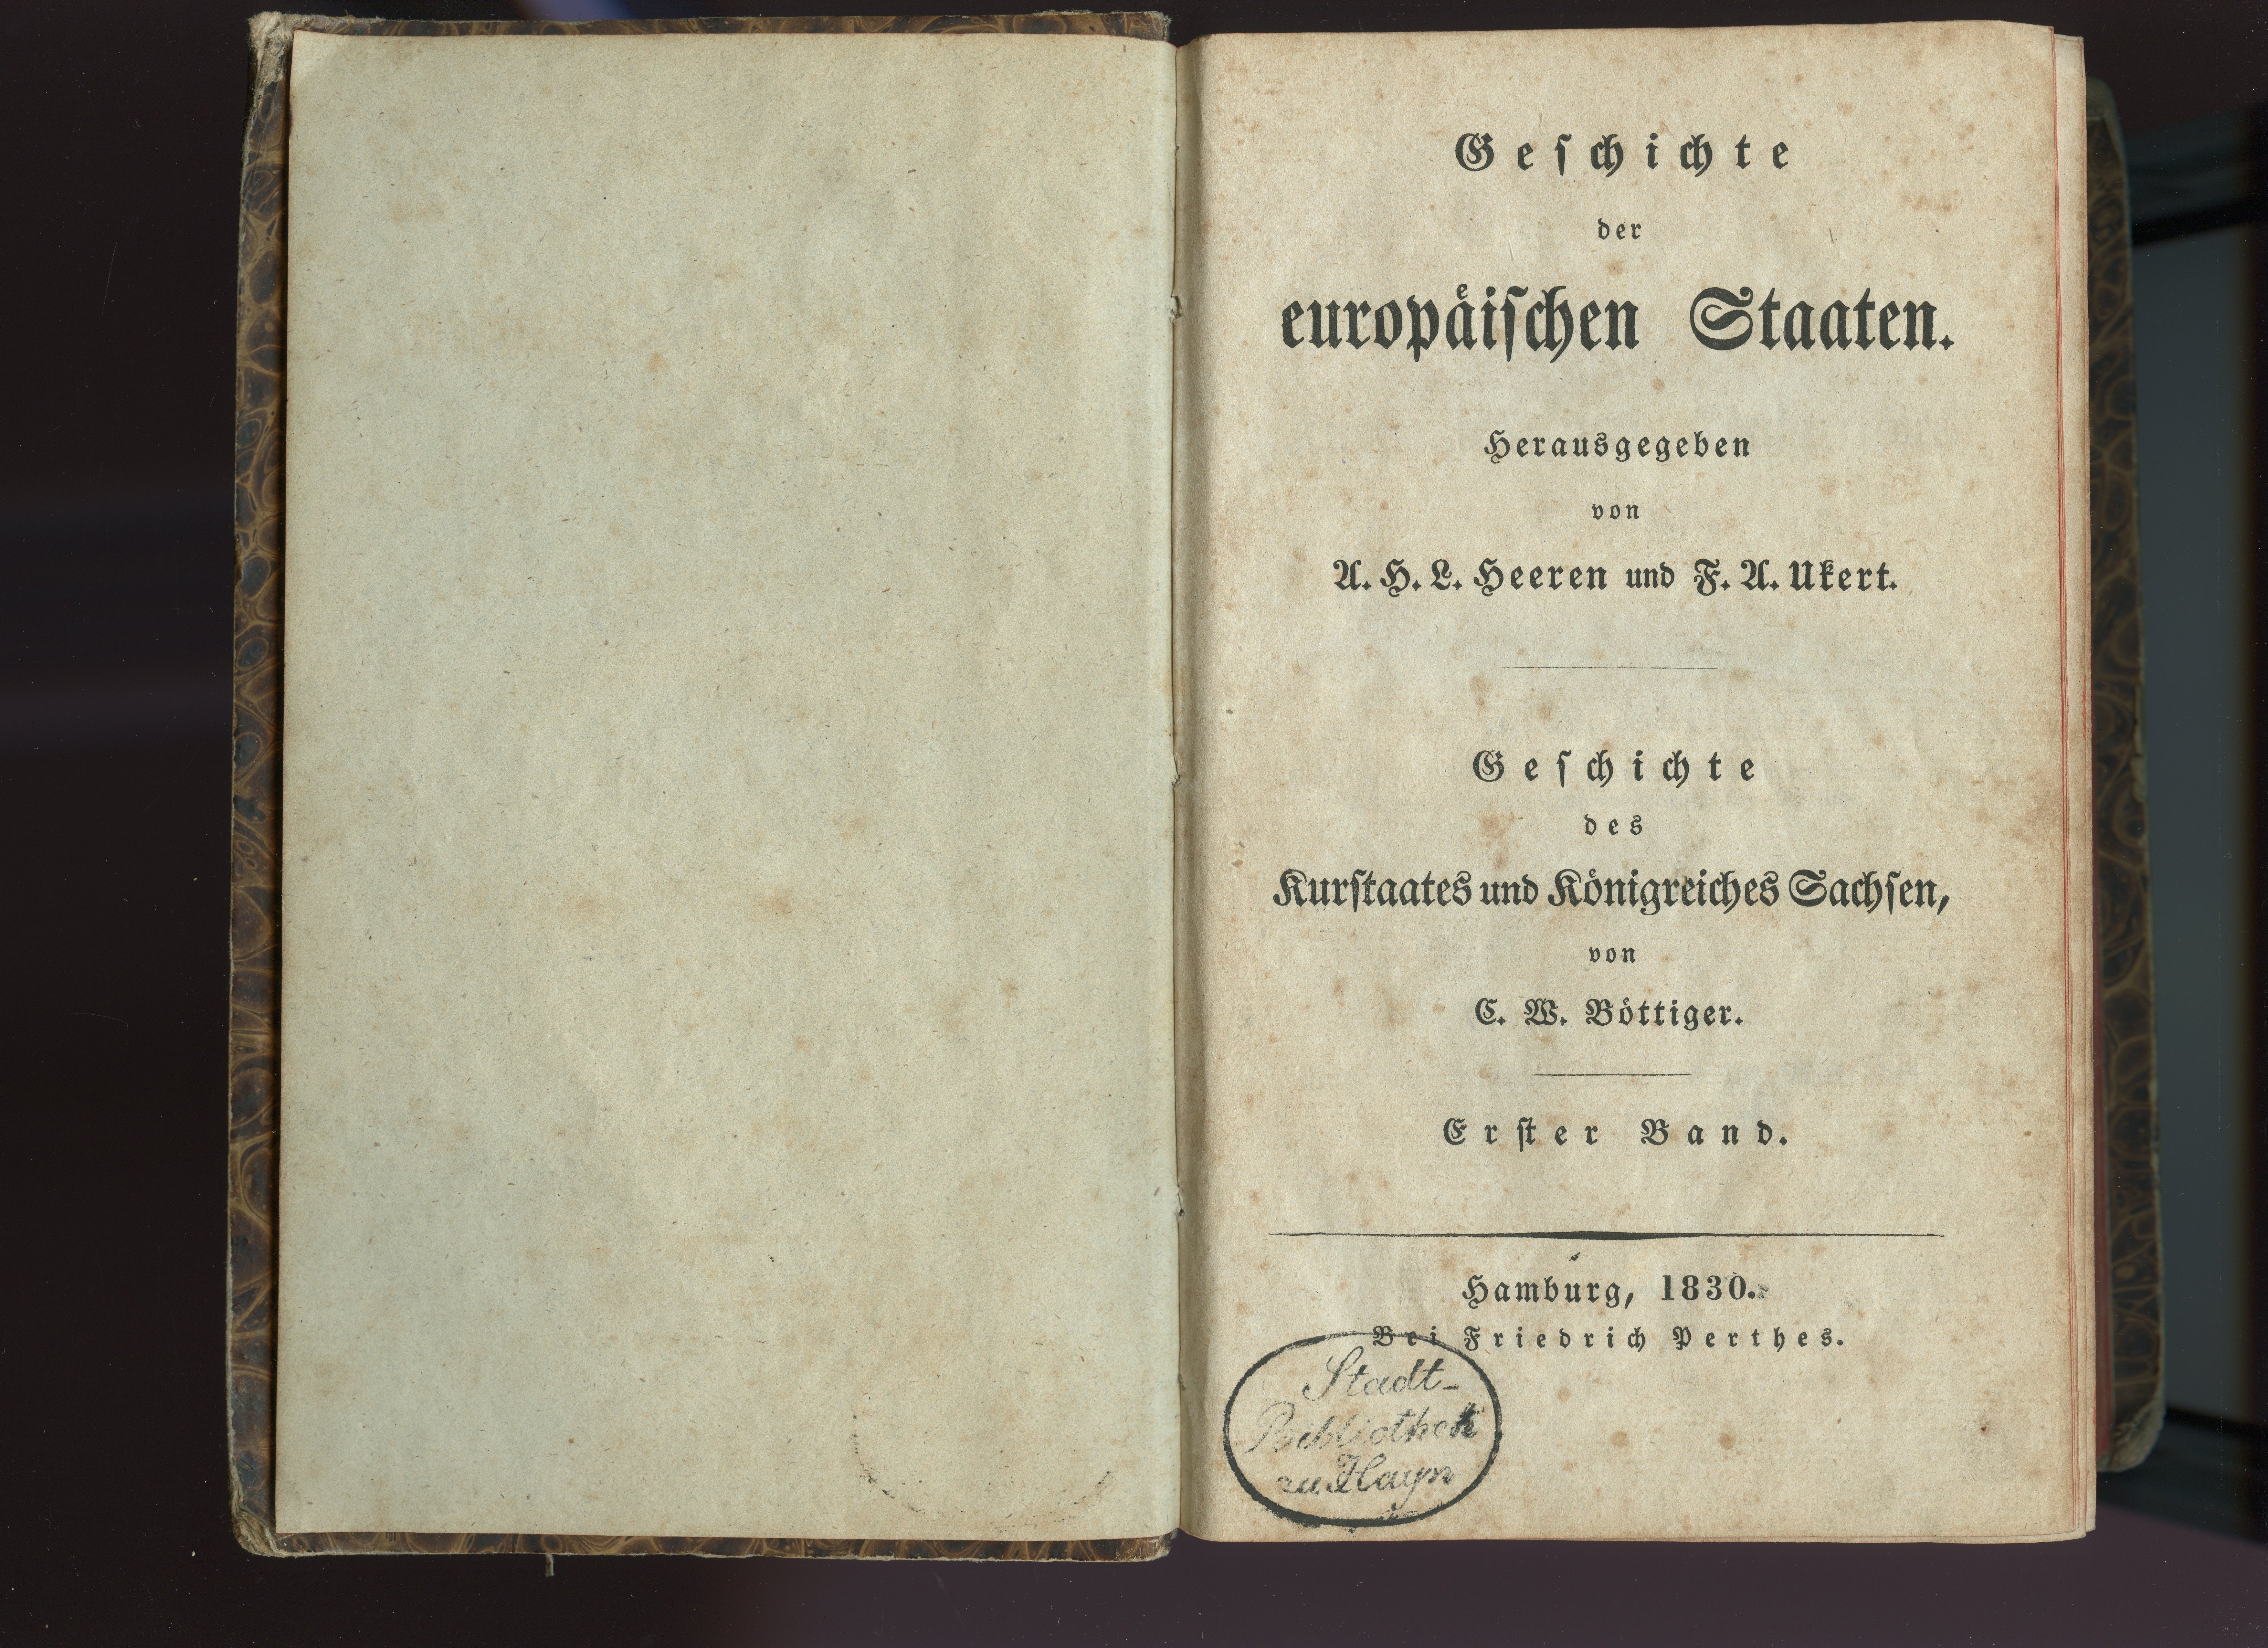 Böttiger, C.W.: Geschichte des Kurstaates und Königreiches Sachsen, Bd. 1, 1830 (Museum Alte Lateinschule CC BY-NC-SA)